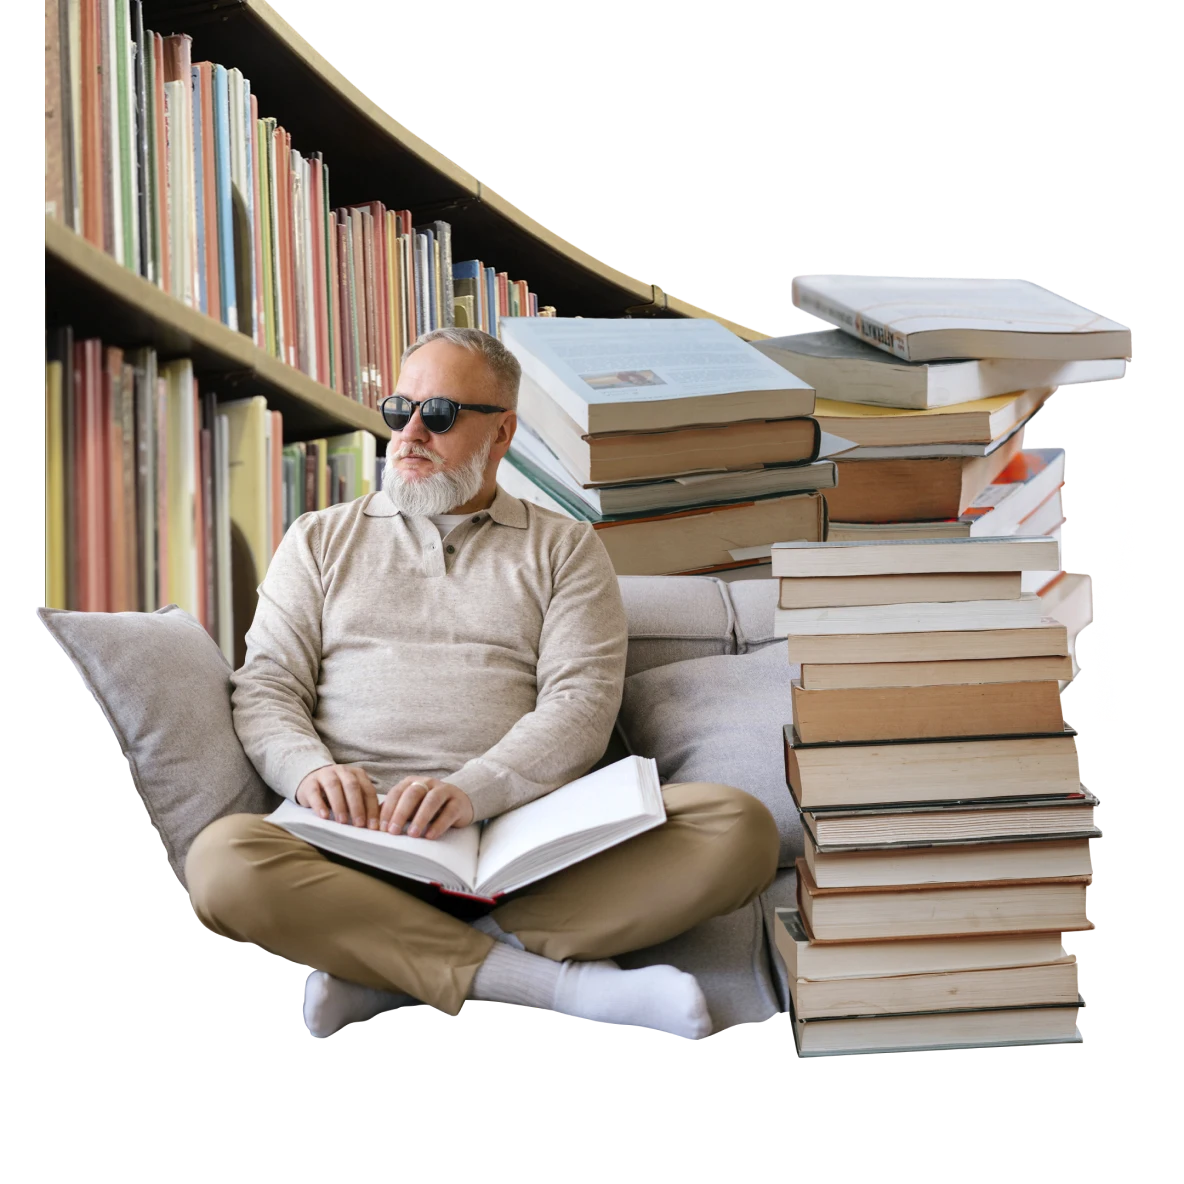 Un hombre de piel clara con problemas de vista lleva gafas de sol y está sentado de piernas cruzadas mientras lee braille. Está rodeado de pilas de libros y una estantería.